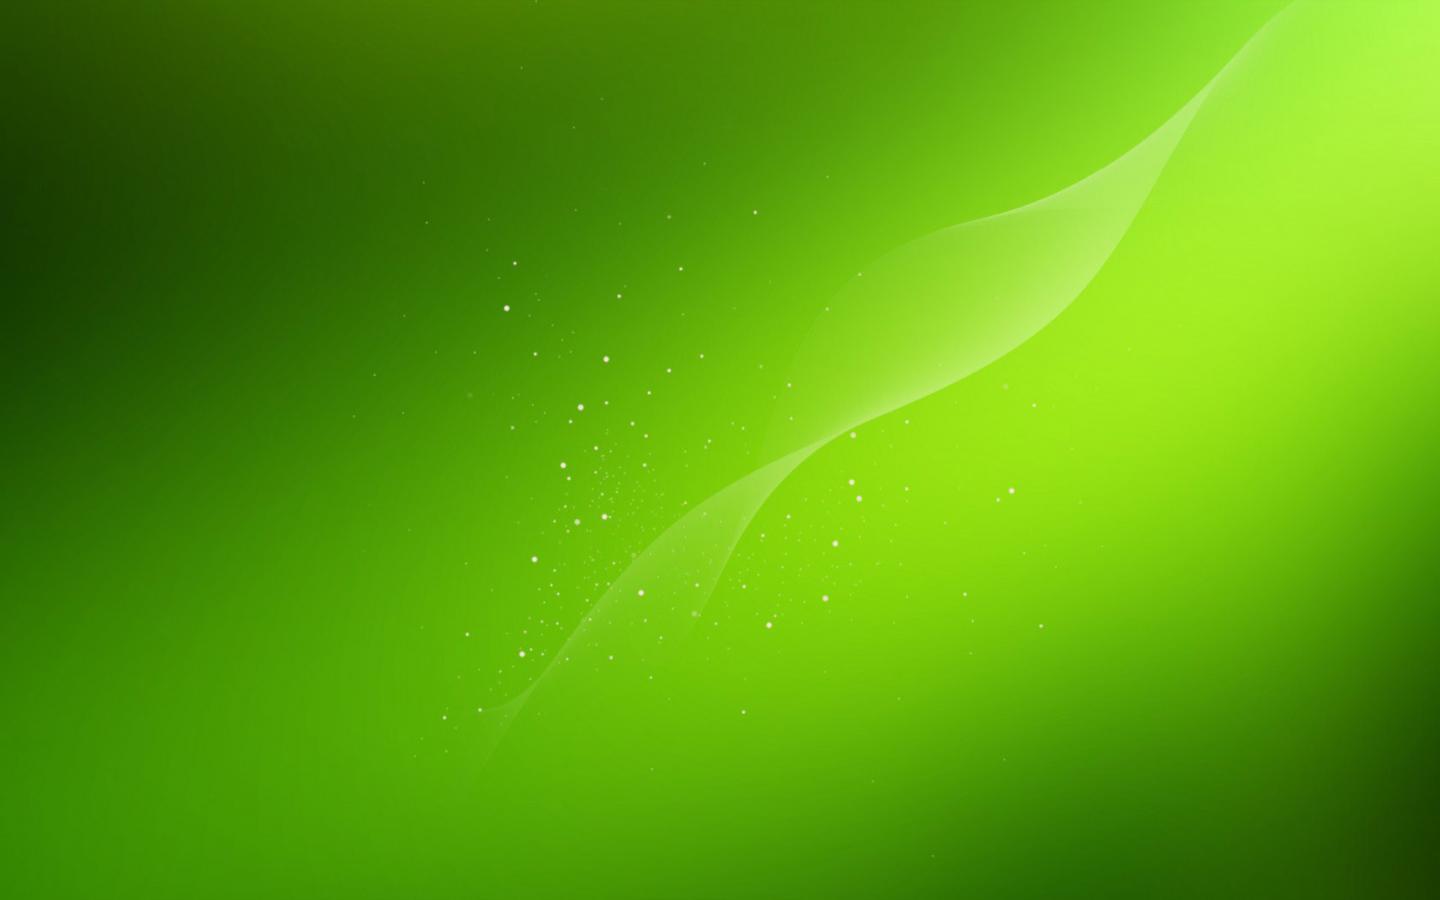 Bạn đang tìm kiếm những hình nền màu xanh lá cây đẹp để cập nhật cho điện thoại hoặc máy tính của mình? Bạn đến đúng chỗ rồi đấy! Hãy tải về miễn phí những hình nền xanh lá cây có chất lượng cao và độ phân giải tuyệt vời chỉ với vài cú click chuột.